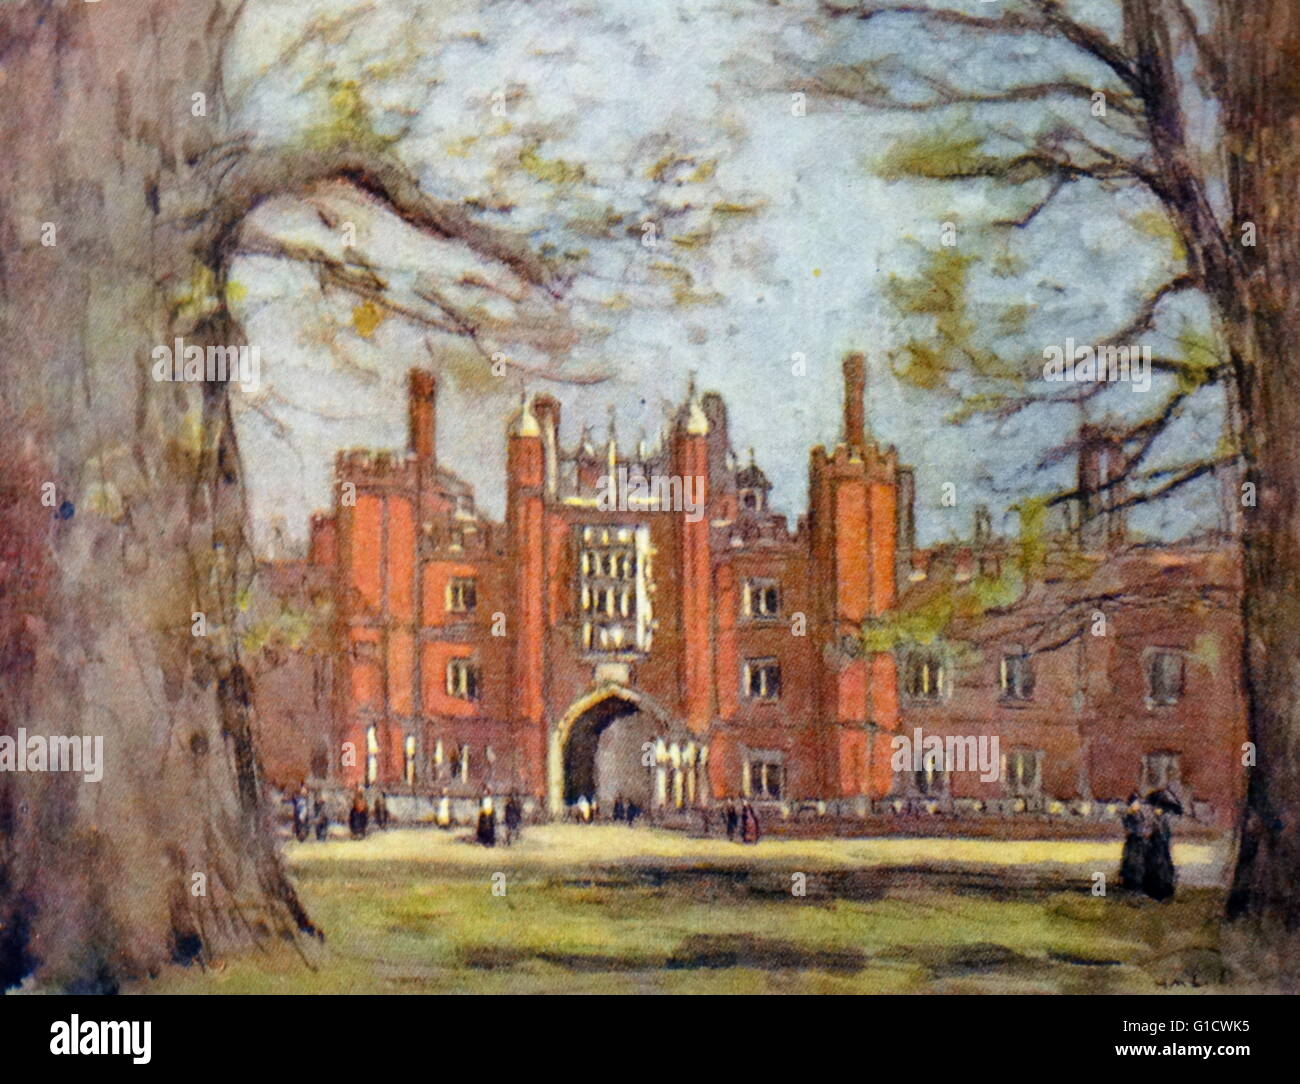 Farbige Skizze der das große Tor des Hampton Court Palace, ein königlicher Palast in London Borough of Richmond upon Thames, Greater London. Vom 20. Jahrhundert Stockfoto